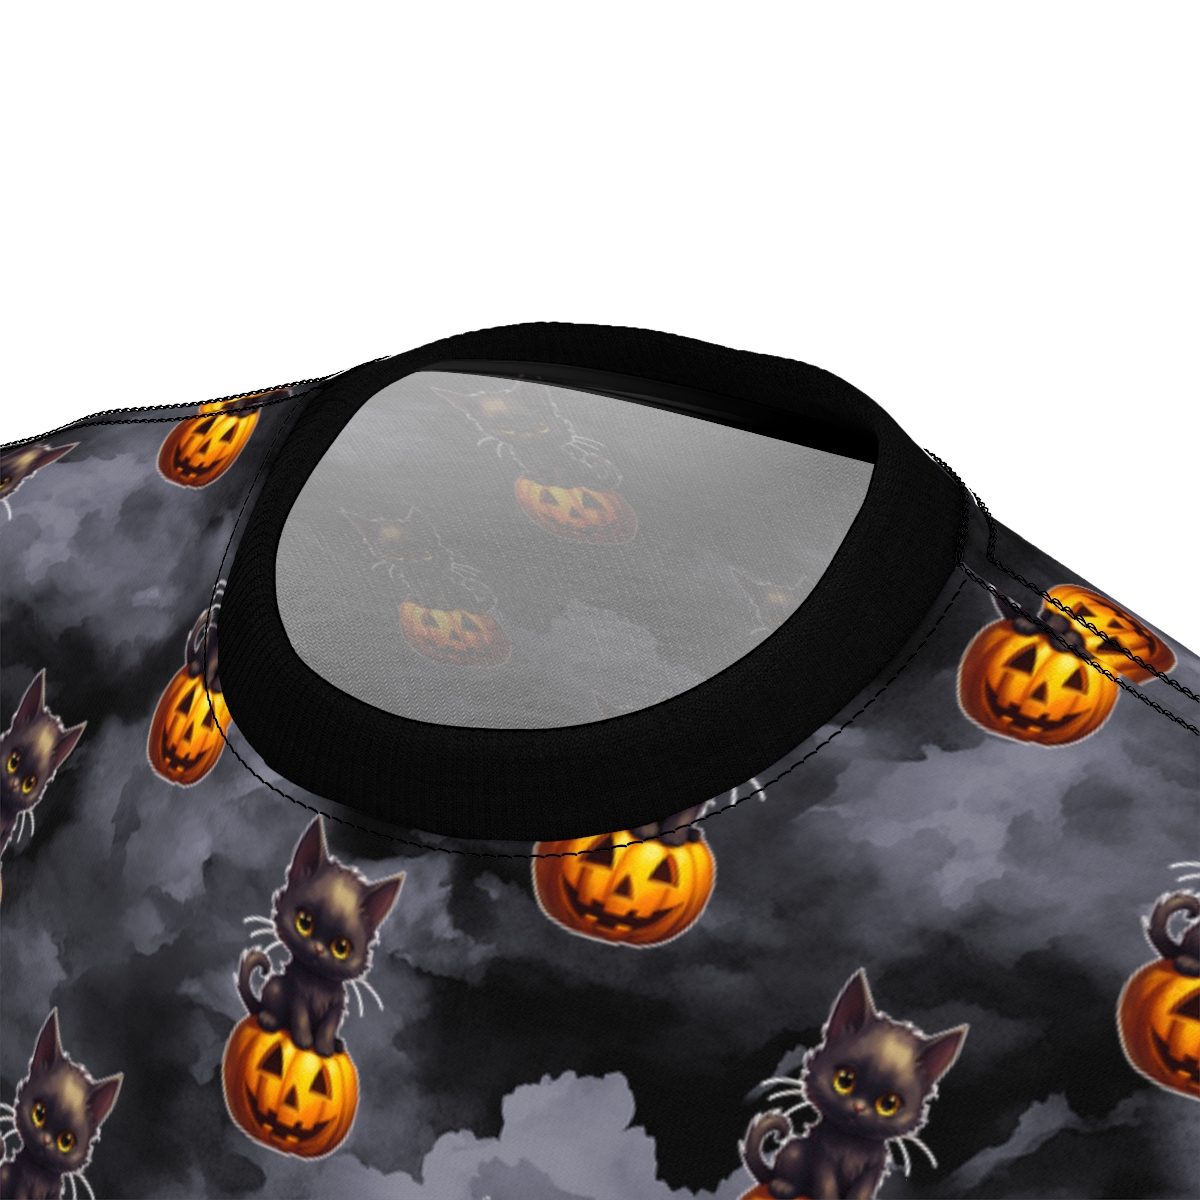 Black Kitten on a Jack-o-lantern Halloween Pumpkin Unisex Cut & Sew Tee product thumbnail image